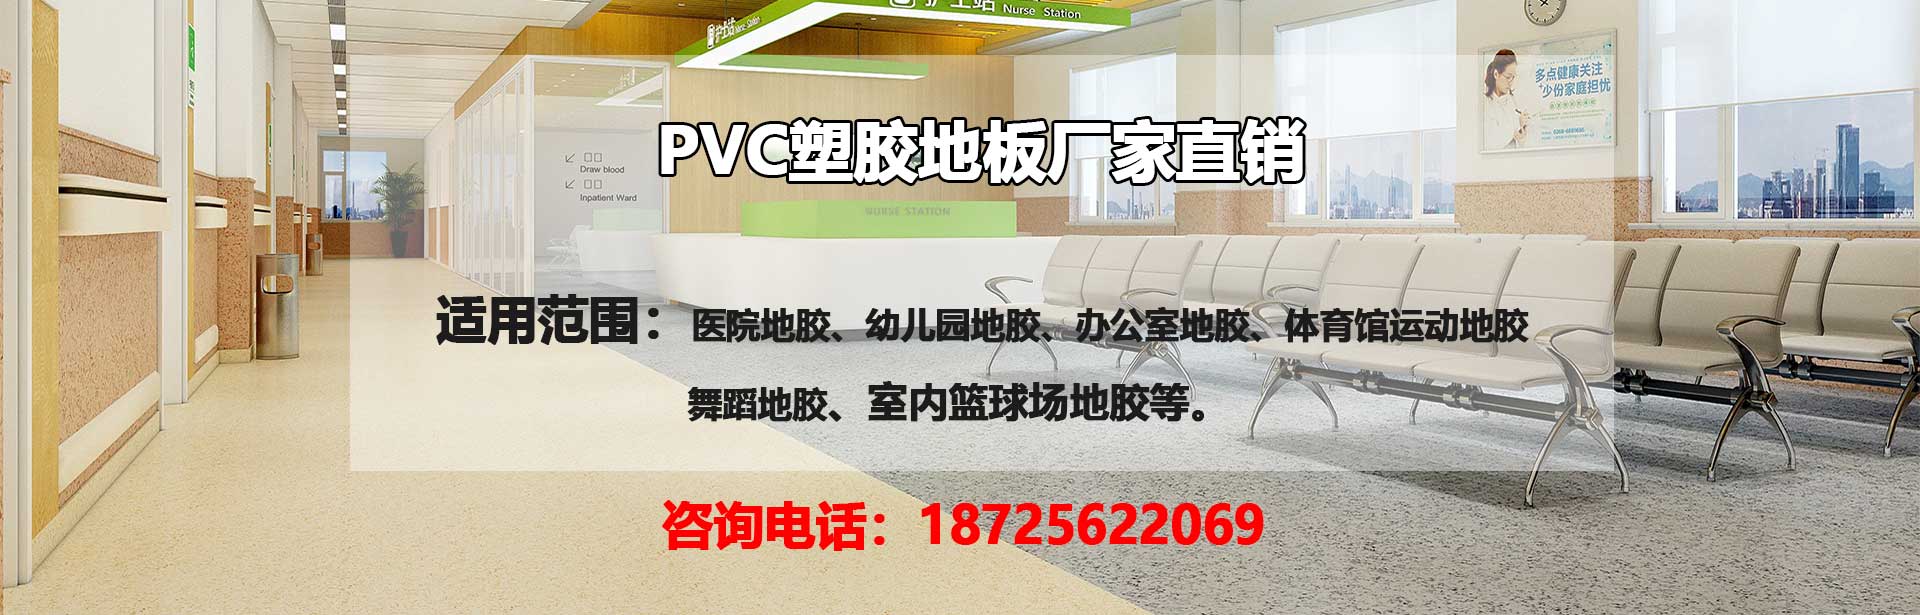 昭通PVC塑胶地板